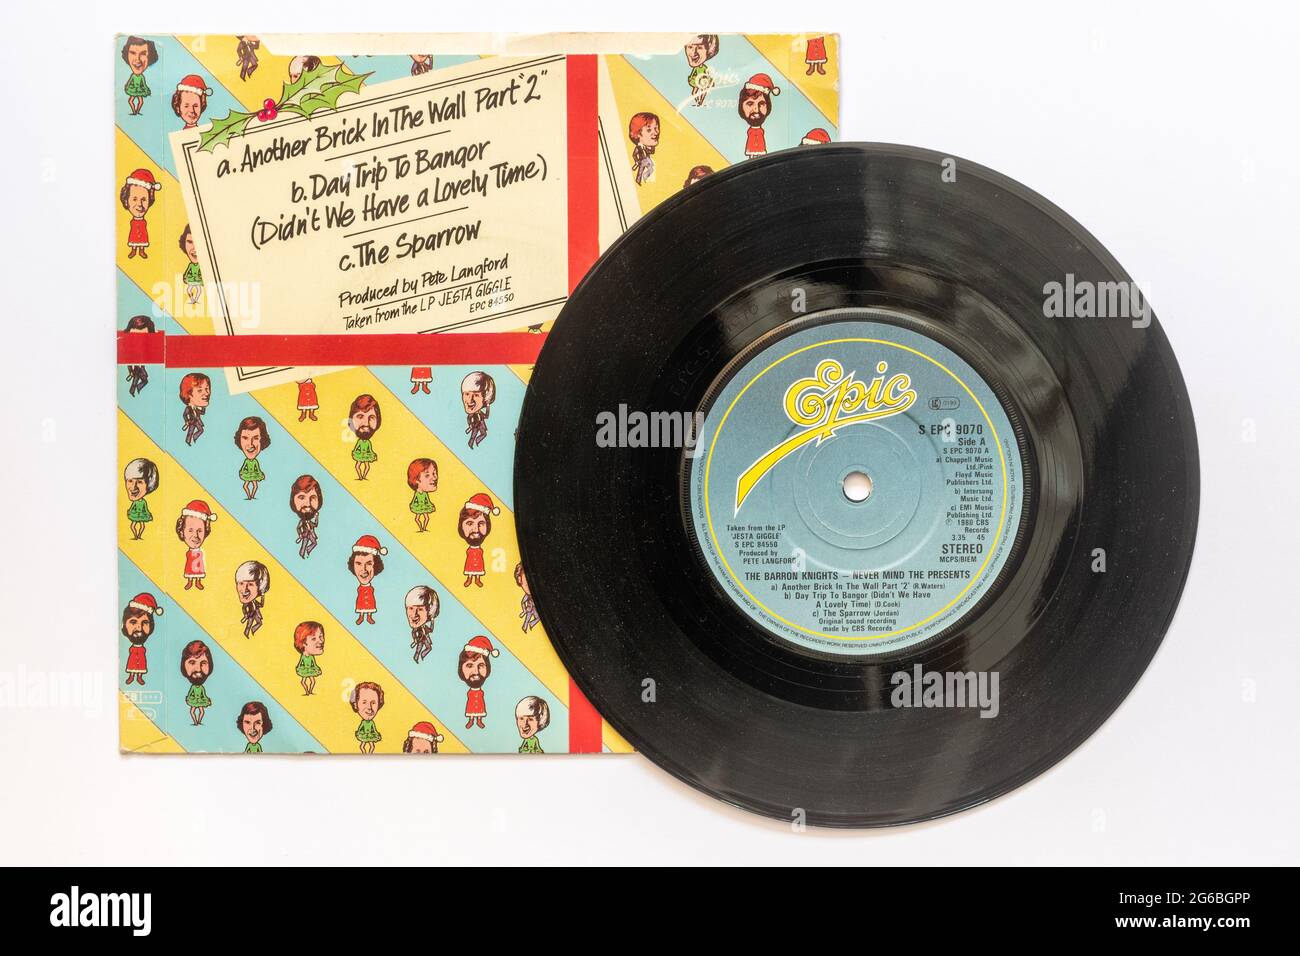 Non importa i regali del gruppo pop Barron Knights, una foto d'archivio del disco in vinile singolo da 7' a 45 giri/min nella manica Foto Stock